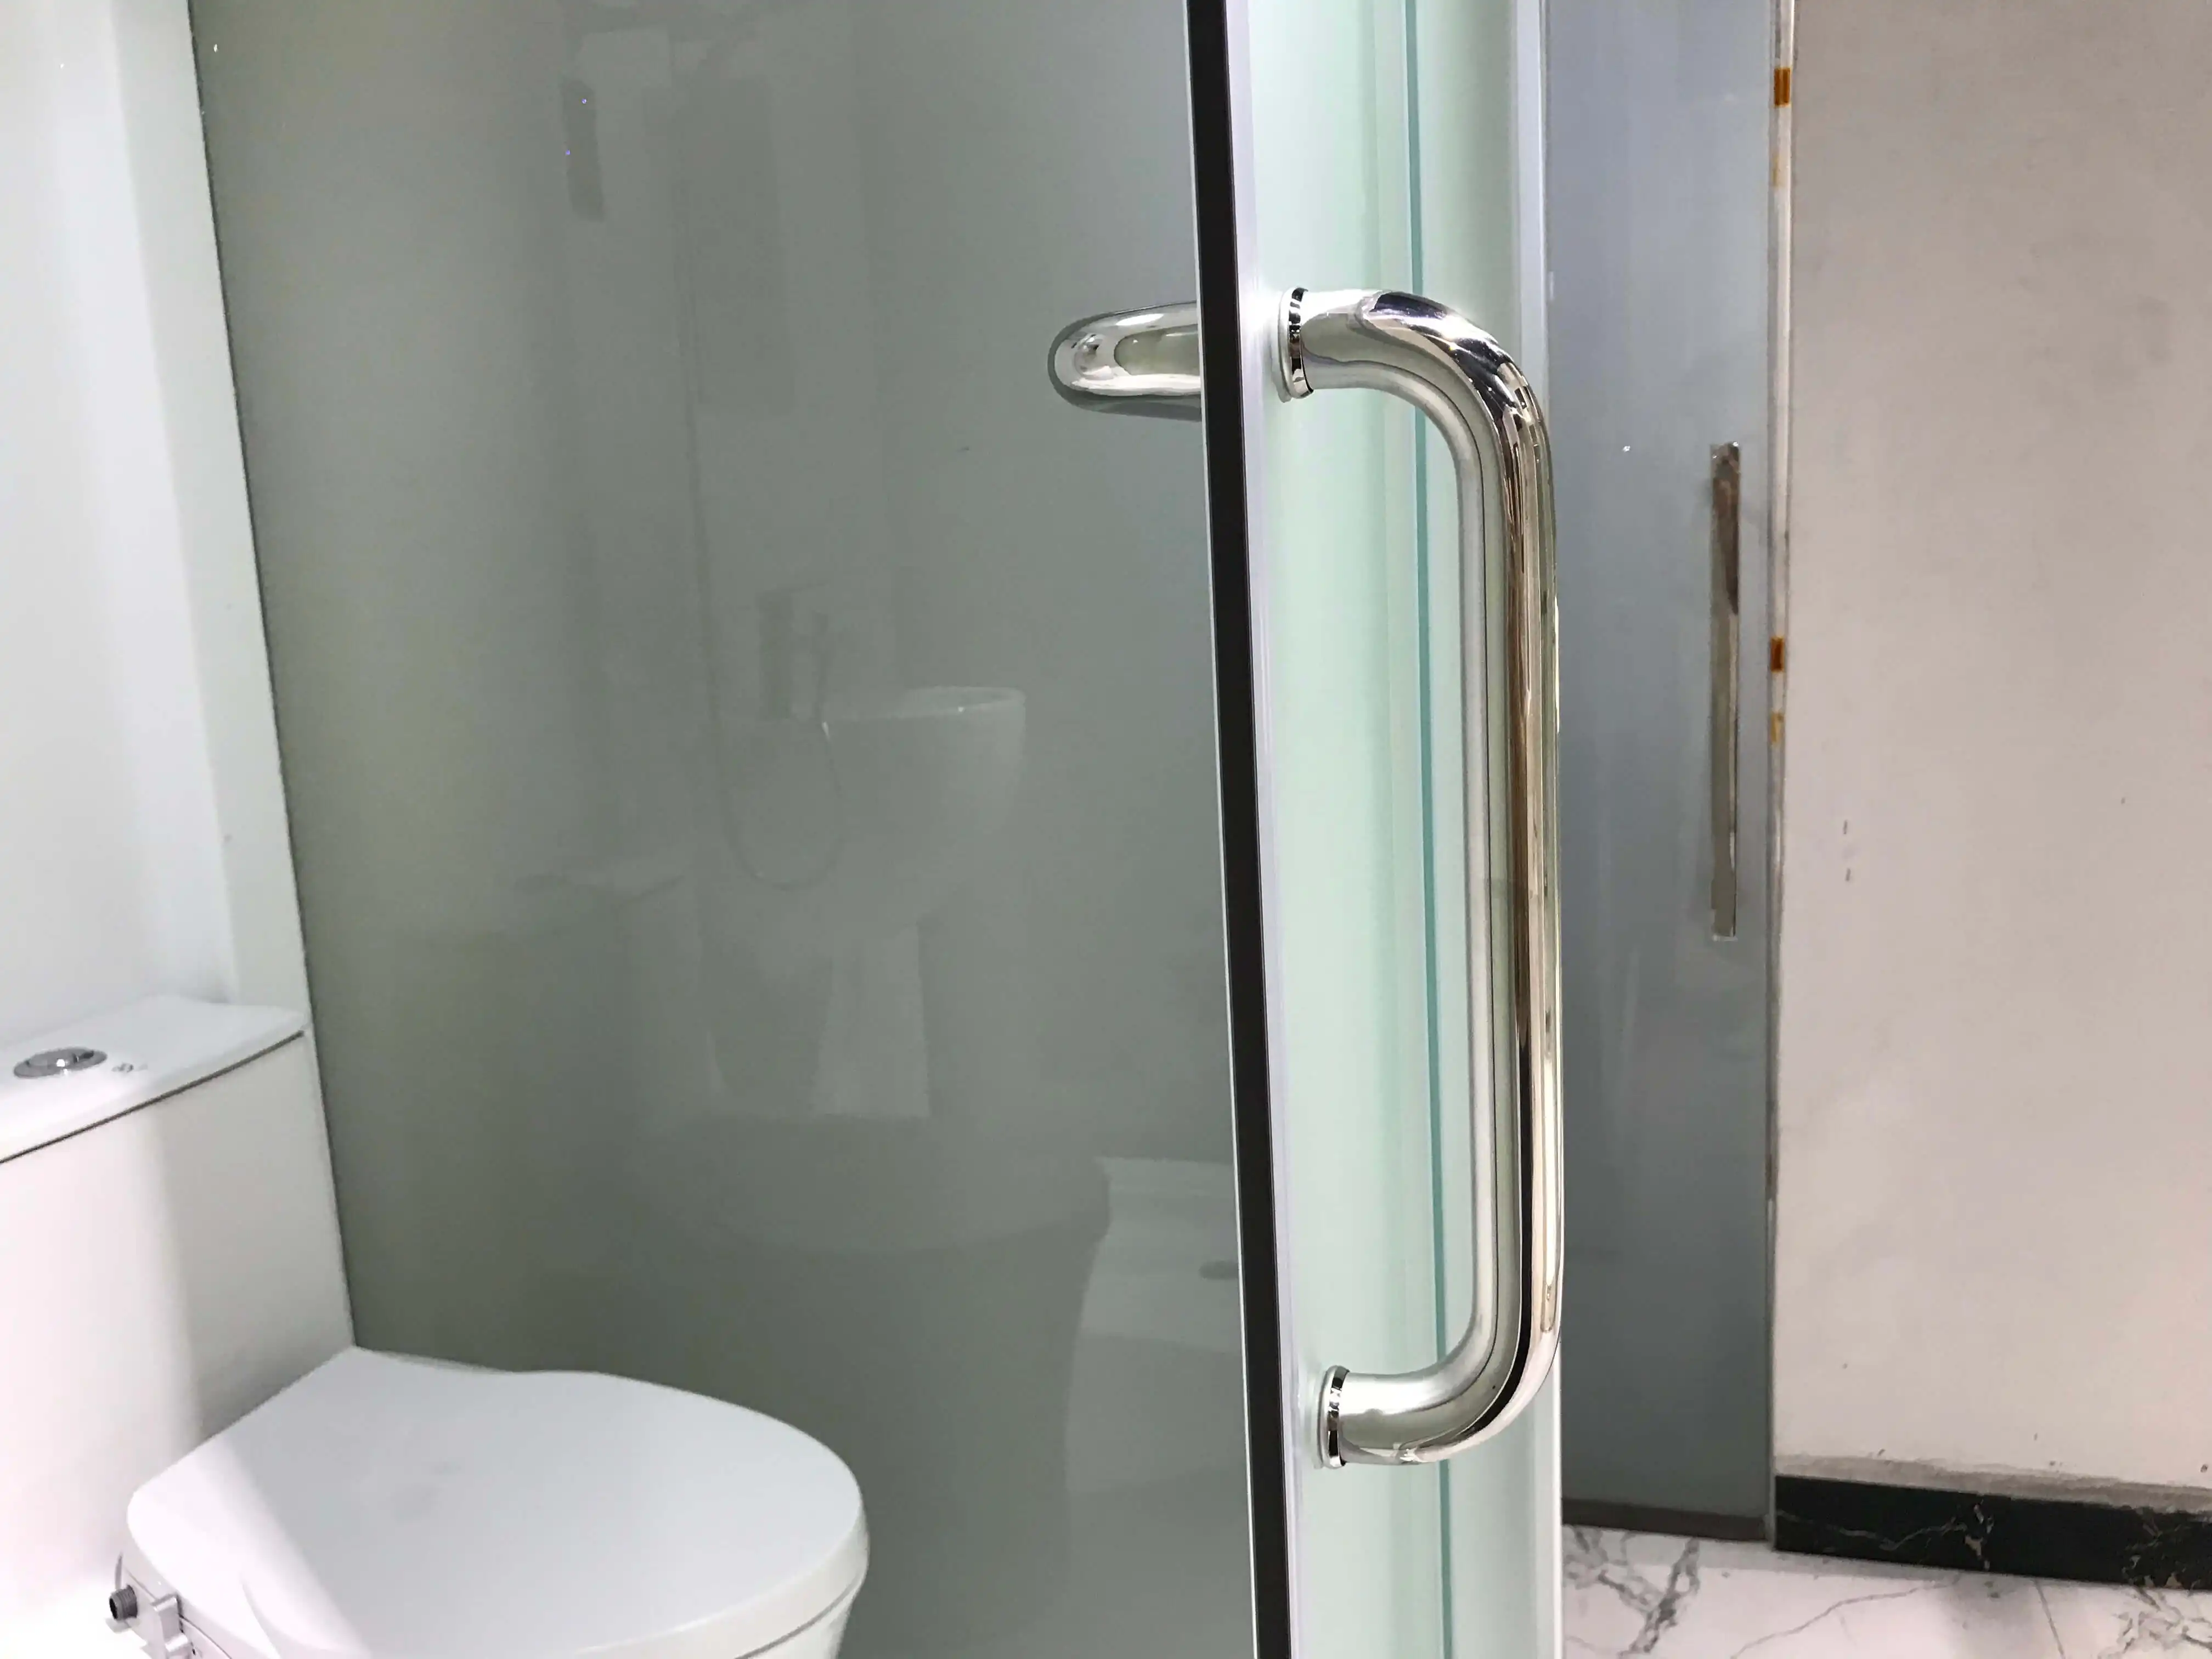 Cabina doccia prefabbricata in lega di alluminio tutto in uno, cabina con cabina scorrevole in vetro scorrevole di facile installazione